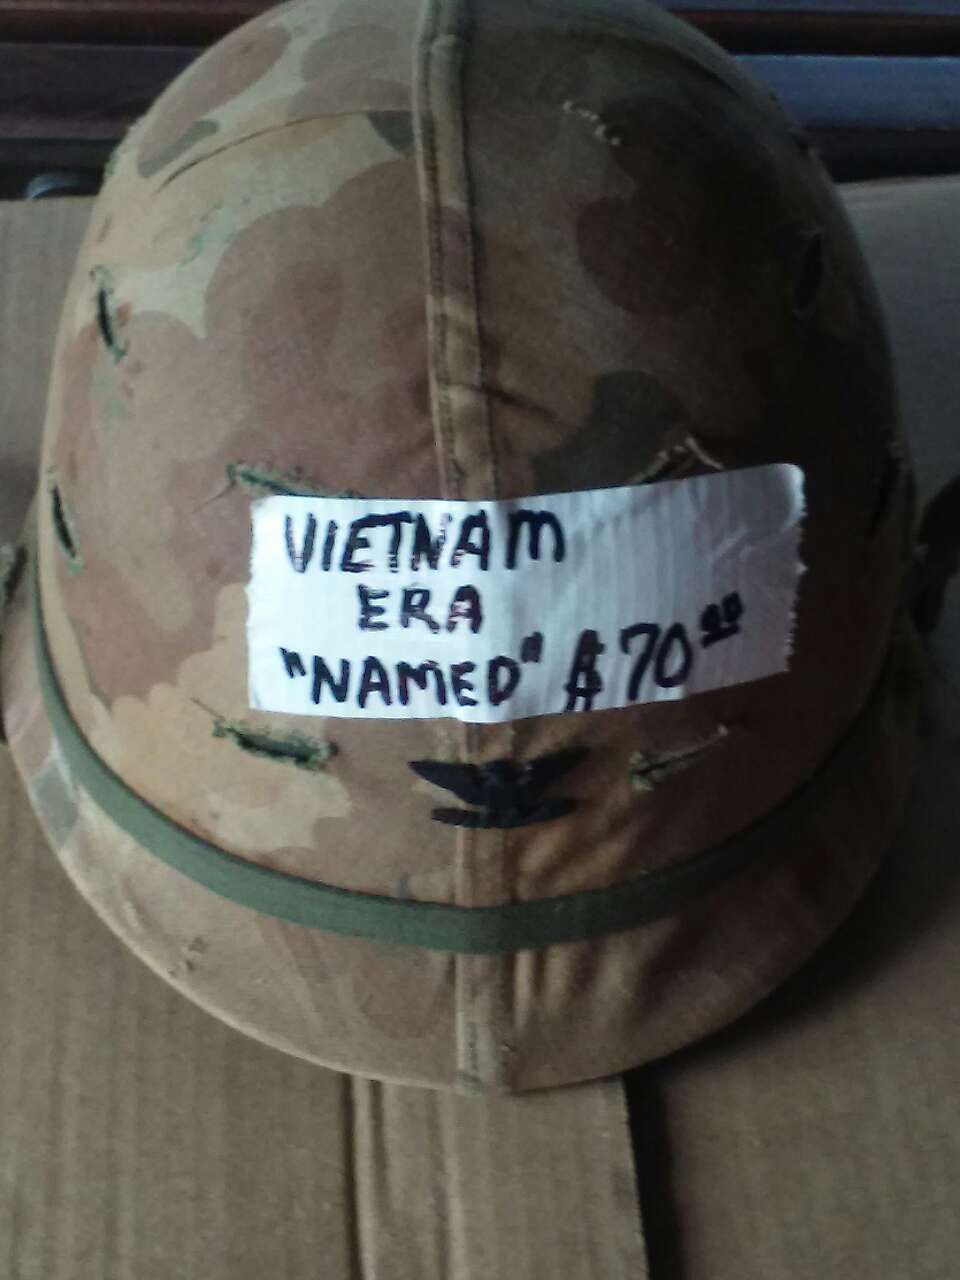 Vietnam Era Helmet and liner